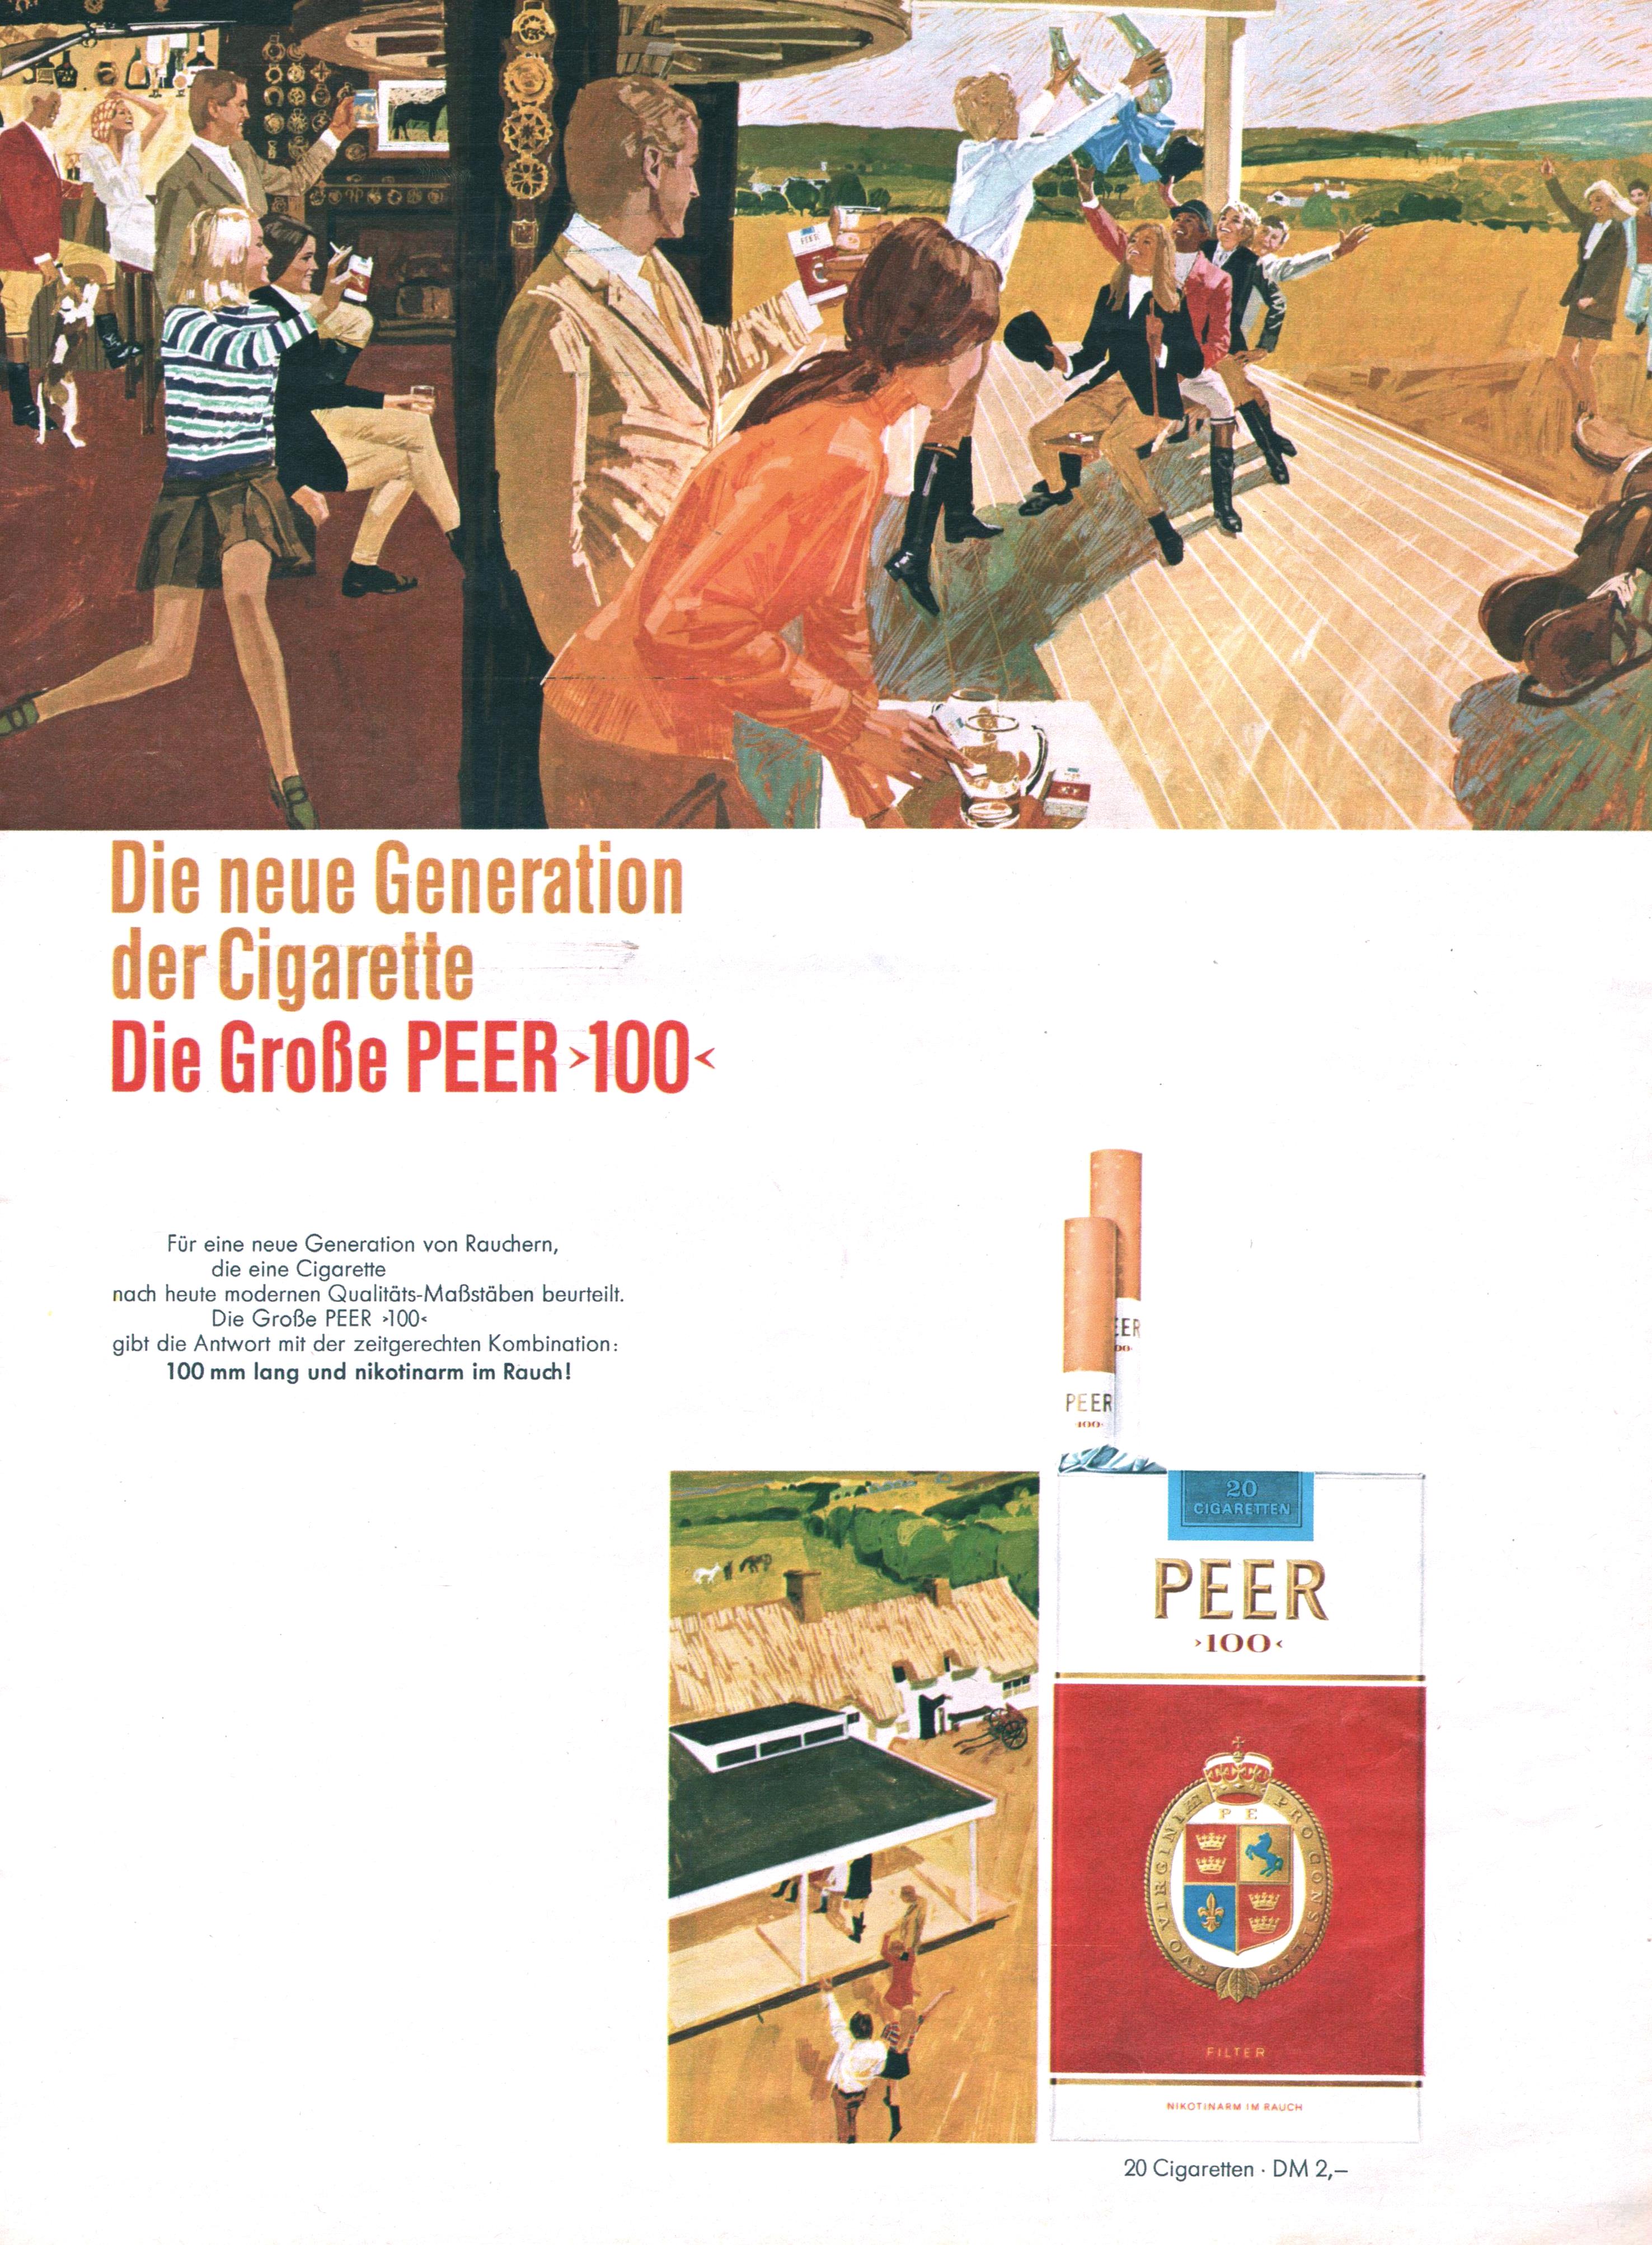 Peer 1968 01.jpg